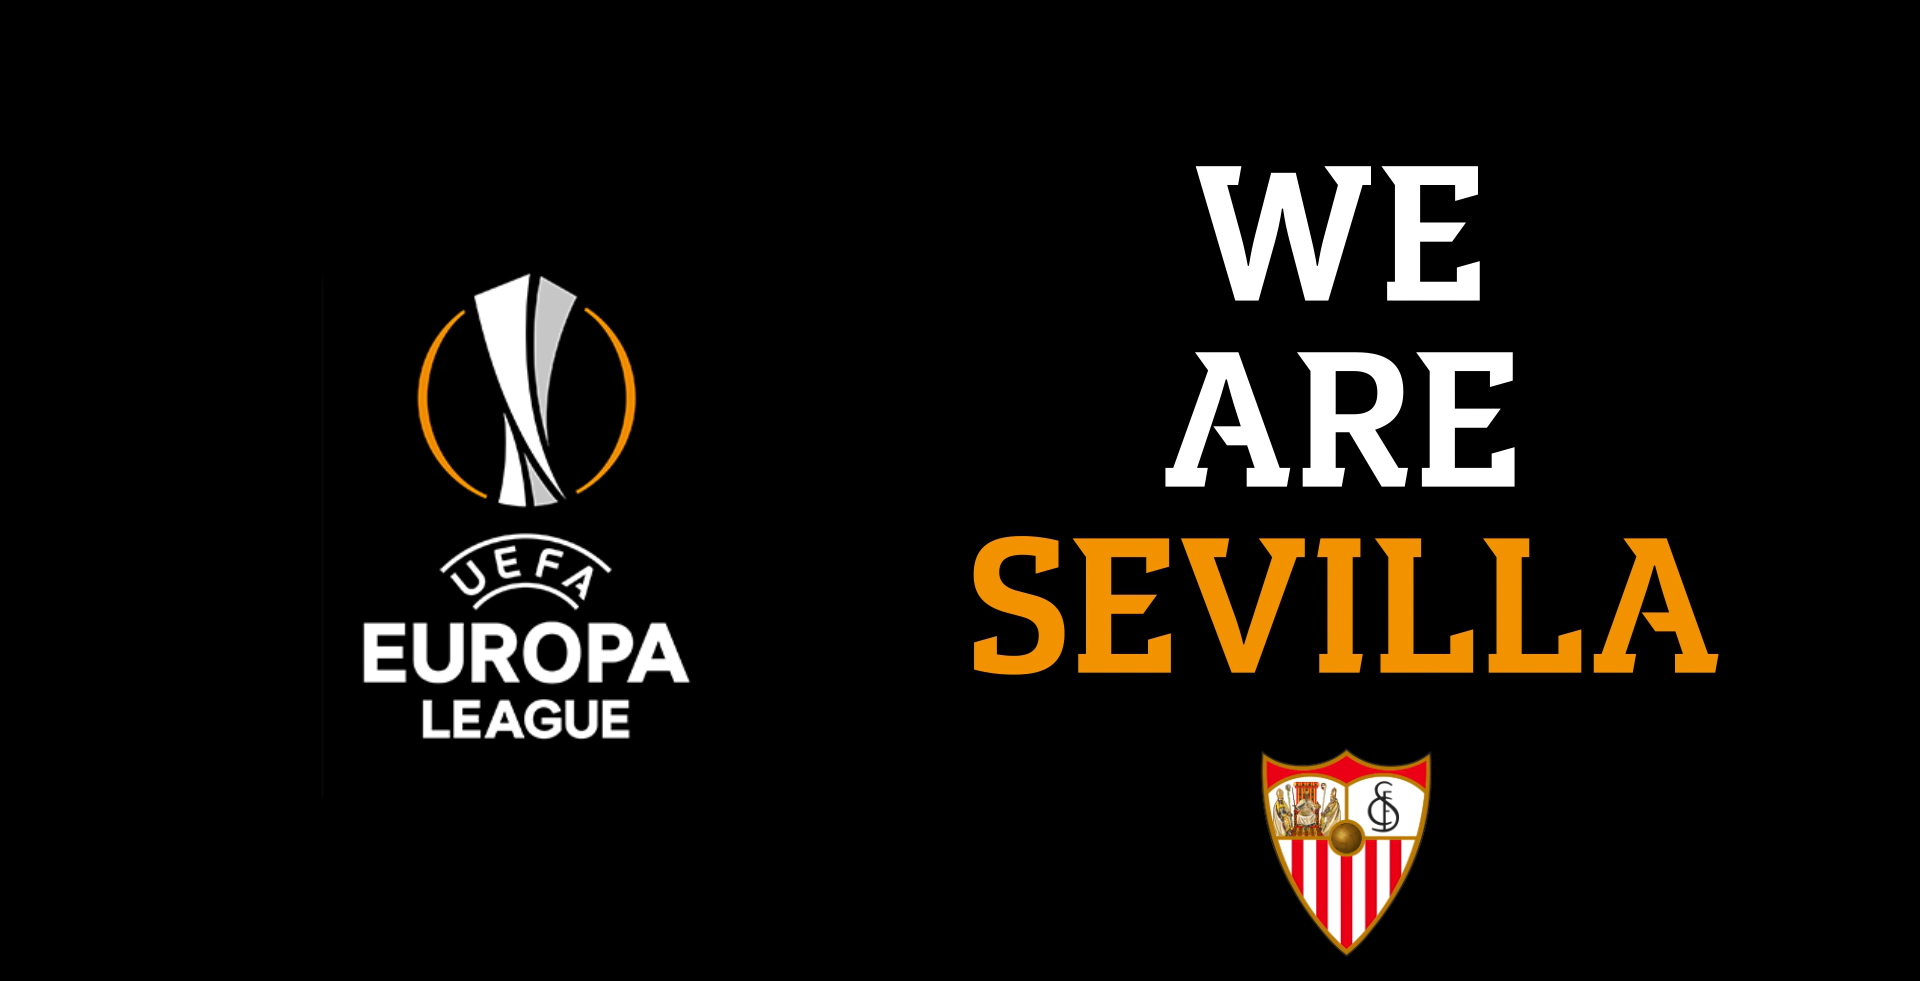 We are Sevilla